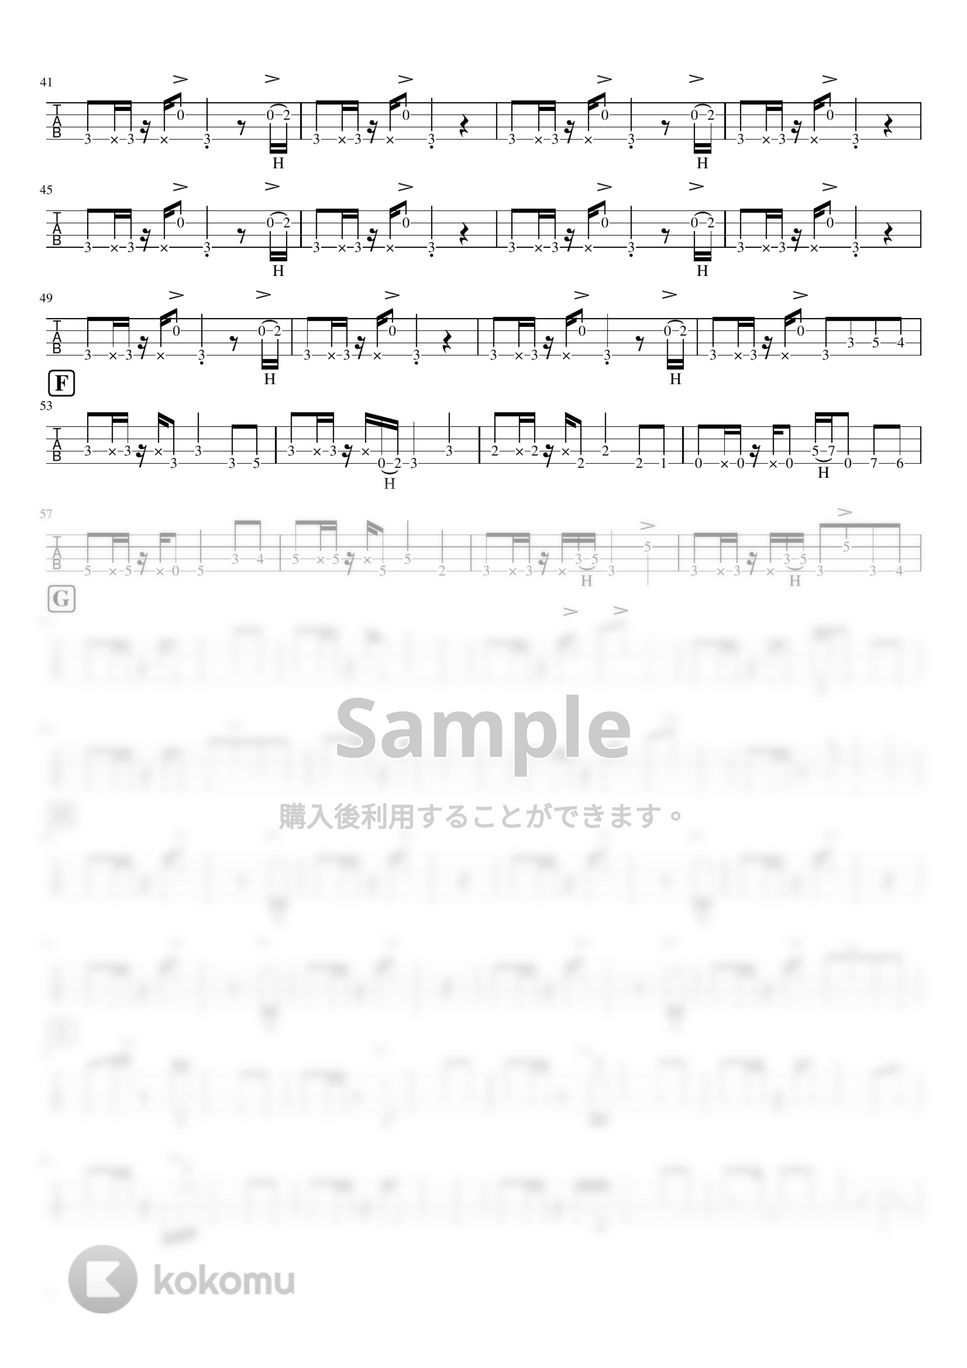 山下達郎 - LOVELAND, ISLAND (ベースTAB譜 / スラップ) by ベースライン研究所たぺ